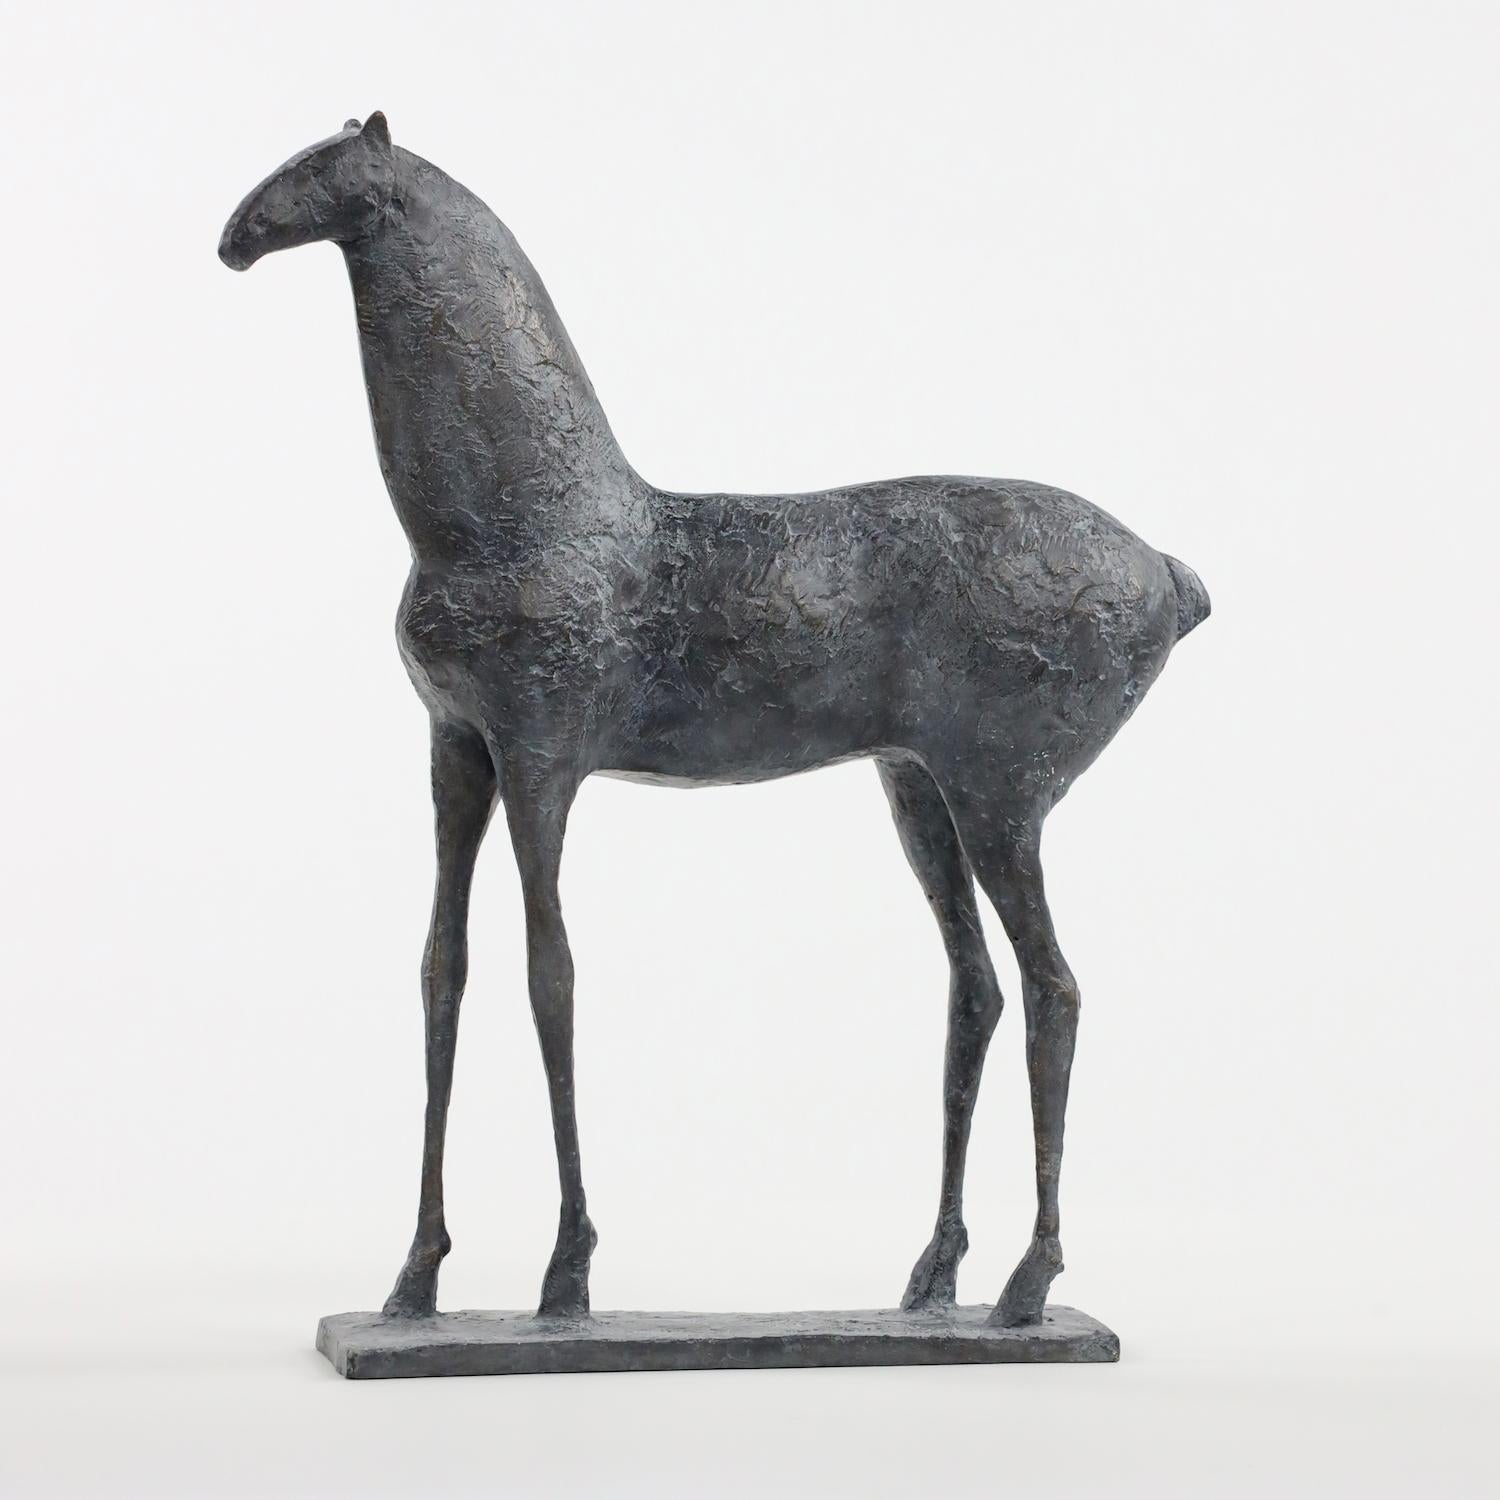 Petit Cheval III (Small Horse III), sculpture de l'artiste contemporain français Pierre Yermia. 
"Le cheval est le thème animalier que j'ai le plus souvent utilisé", déclare l'artiste. "Ici, l'élégance et la force de l'animal sont exprimées par la